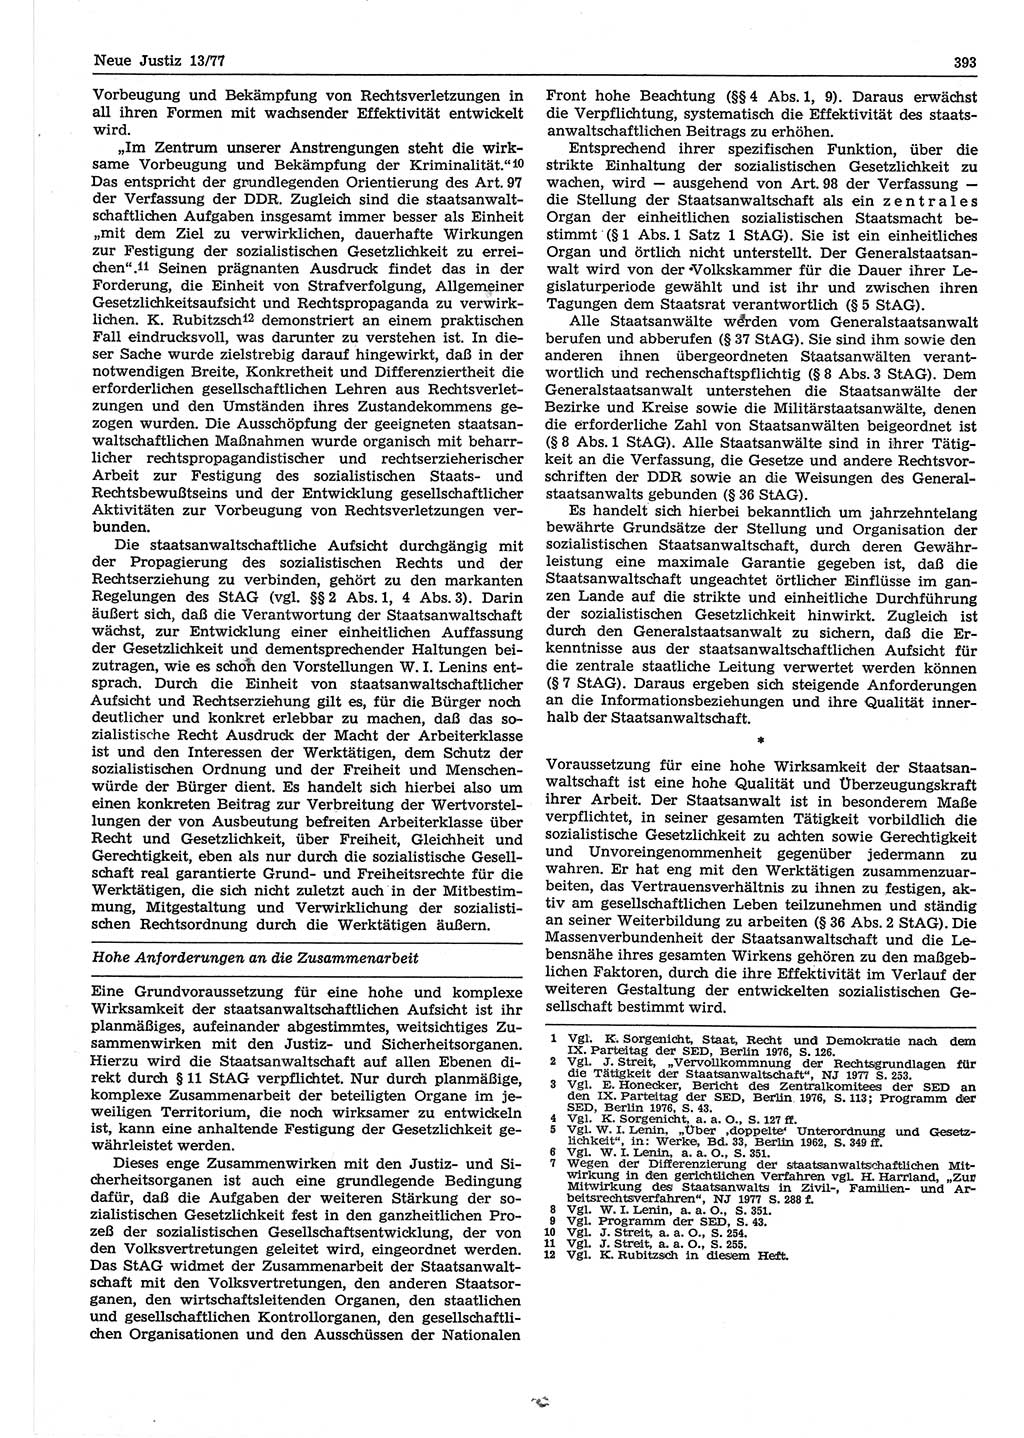 Neue Justiz (NJ), Zeitschrift für Recht und Rechtswissenschaft-Zeitschrift, sozialistisches Recht und Gesetzlichkeit, 31. Jahrgang 1977, Seite 393 (NJ DDR 1977, S. 393)